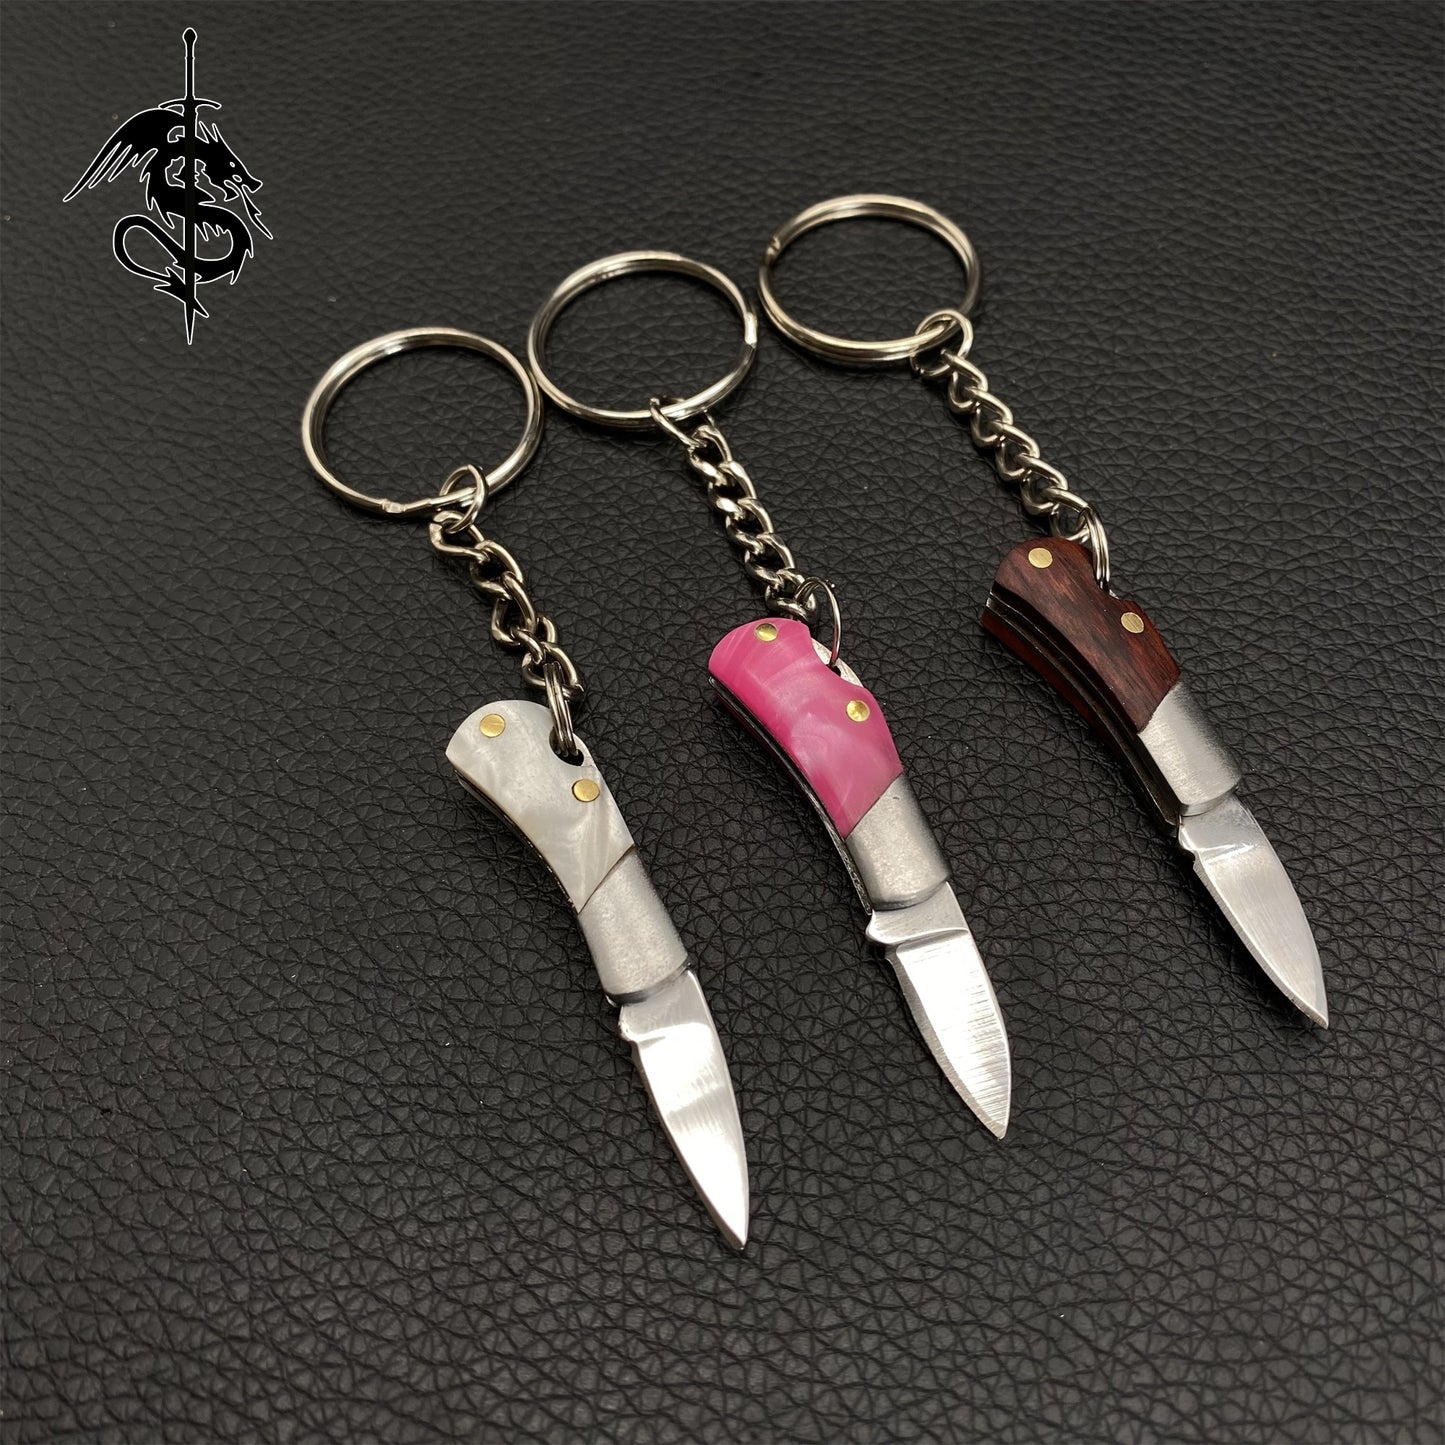 Tiny Keychain Mini Knife EDC Sharp Outdoor Tool Knife